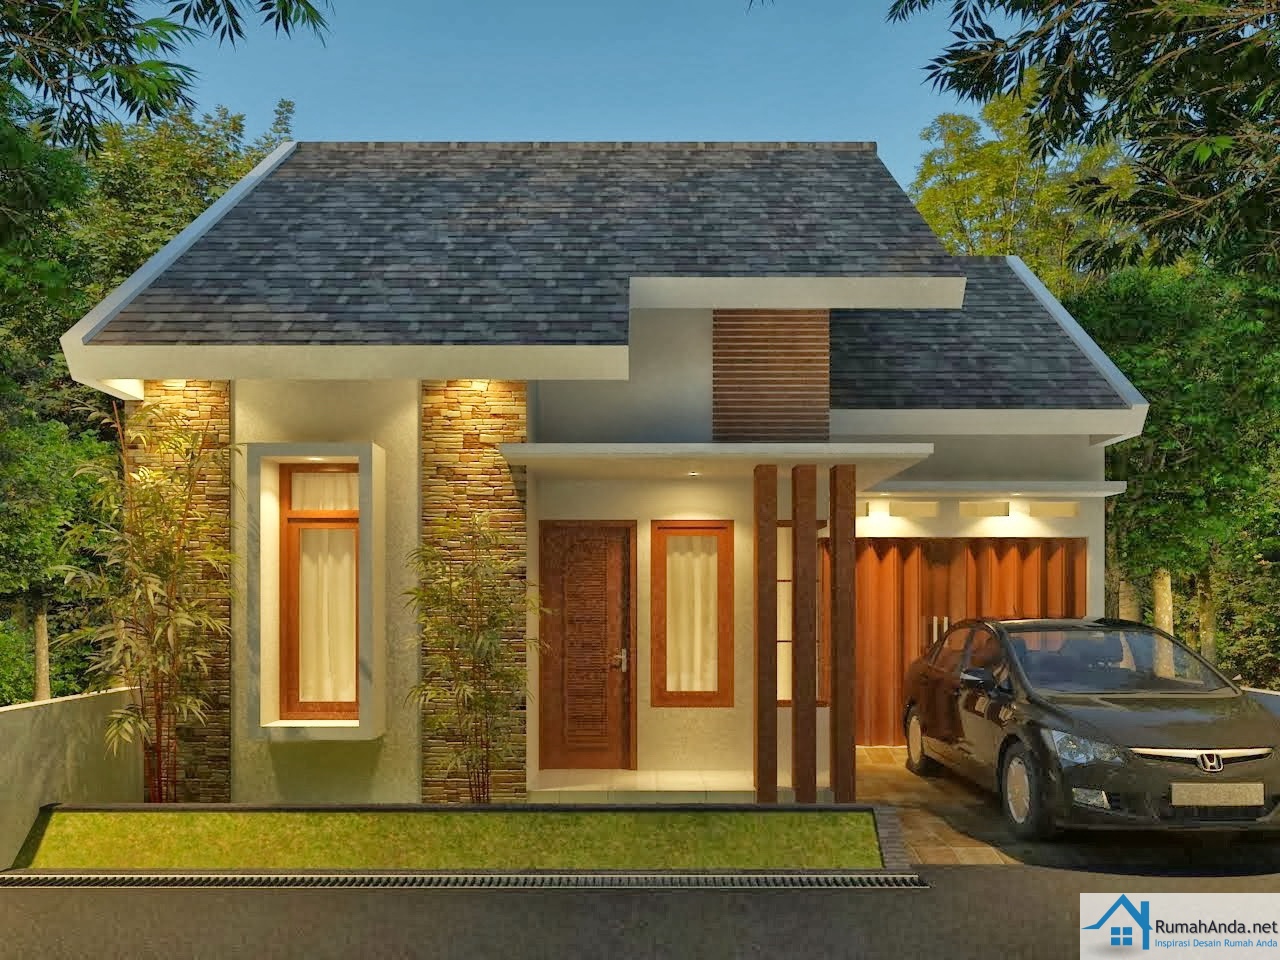  Desain  Rumah  Minimalis  Modern 1 dan 2 Lantai 2021 Contoh Gambar  Rumah 